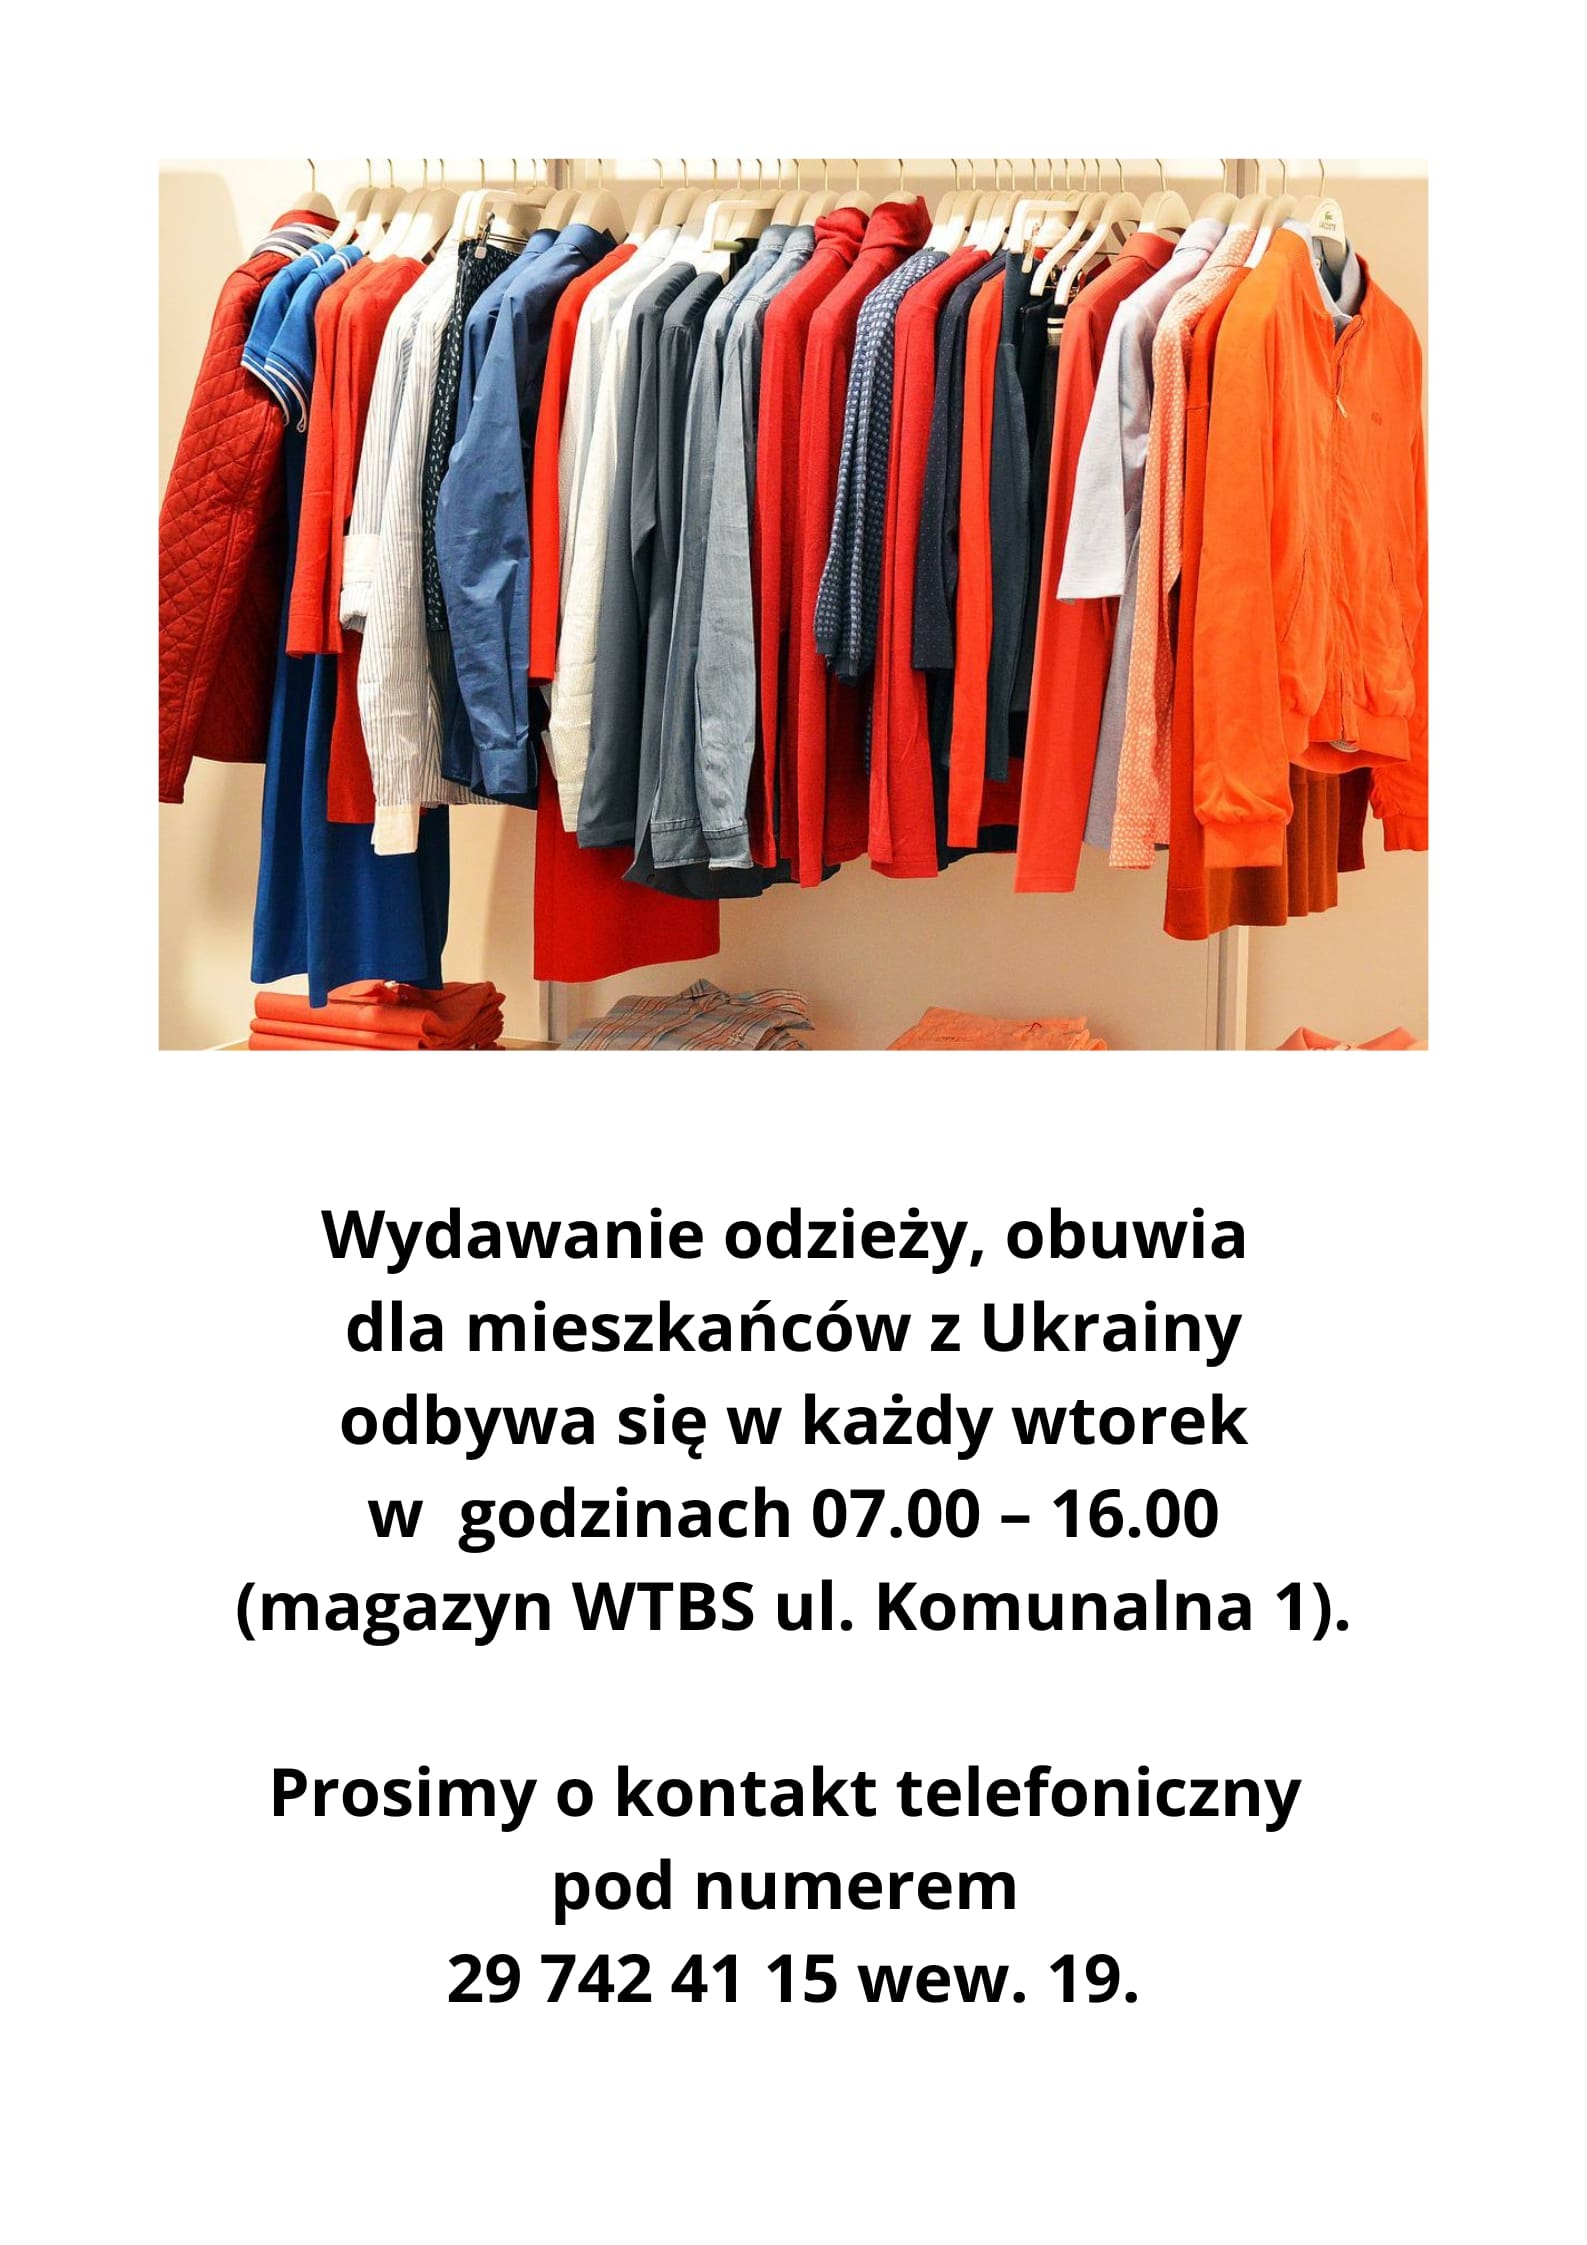 Ikona do artykułu: Wydawanie odzieży, obuwia dla mieszkańców Ukrainy